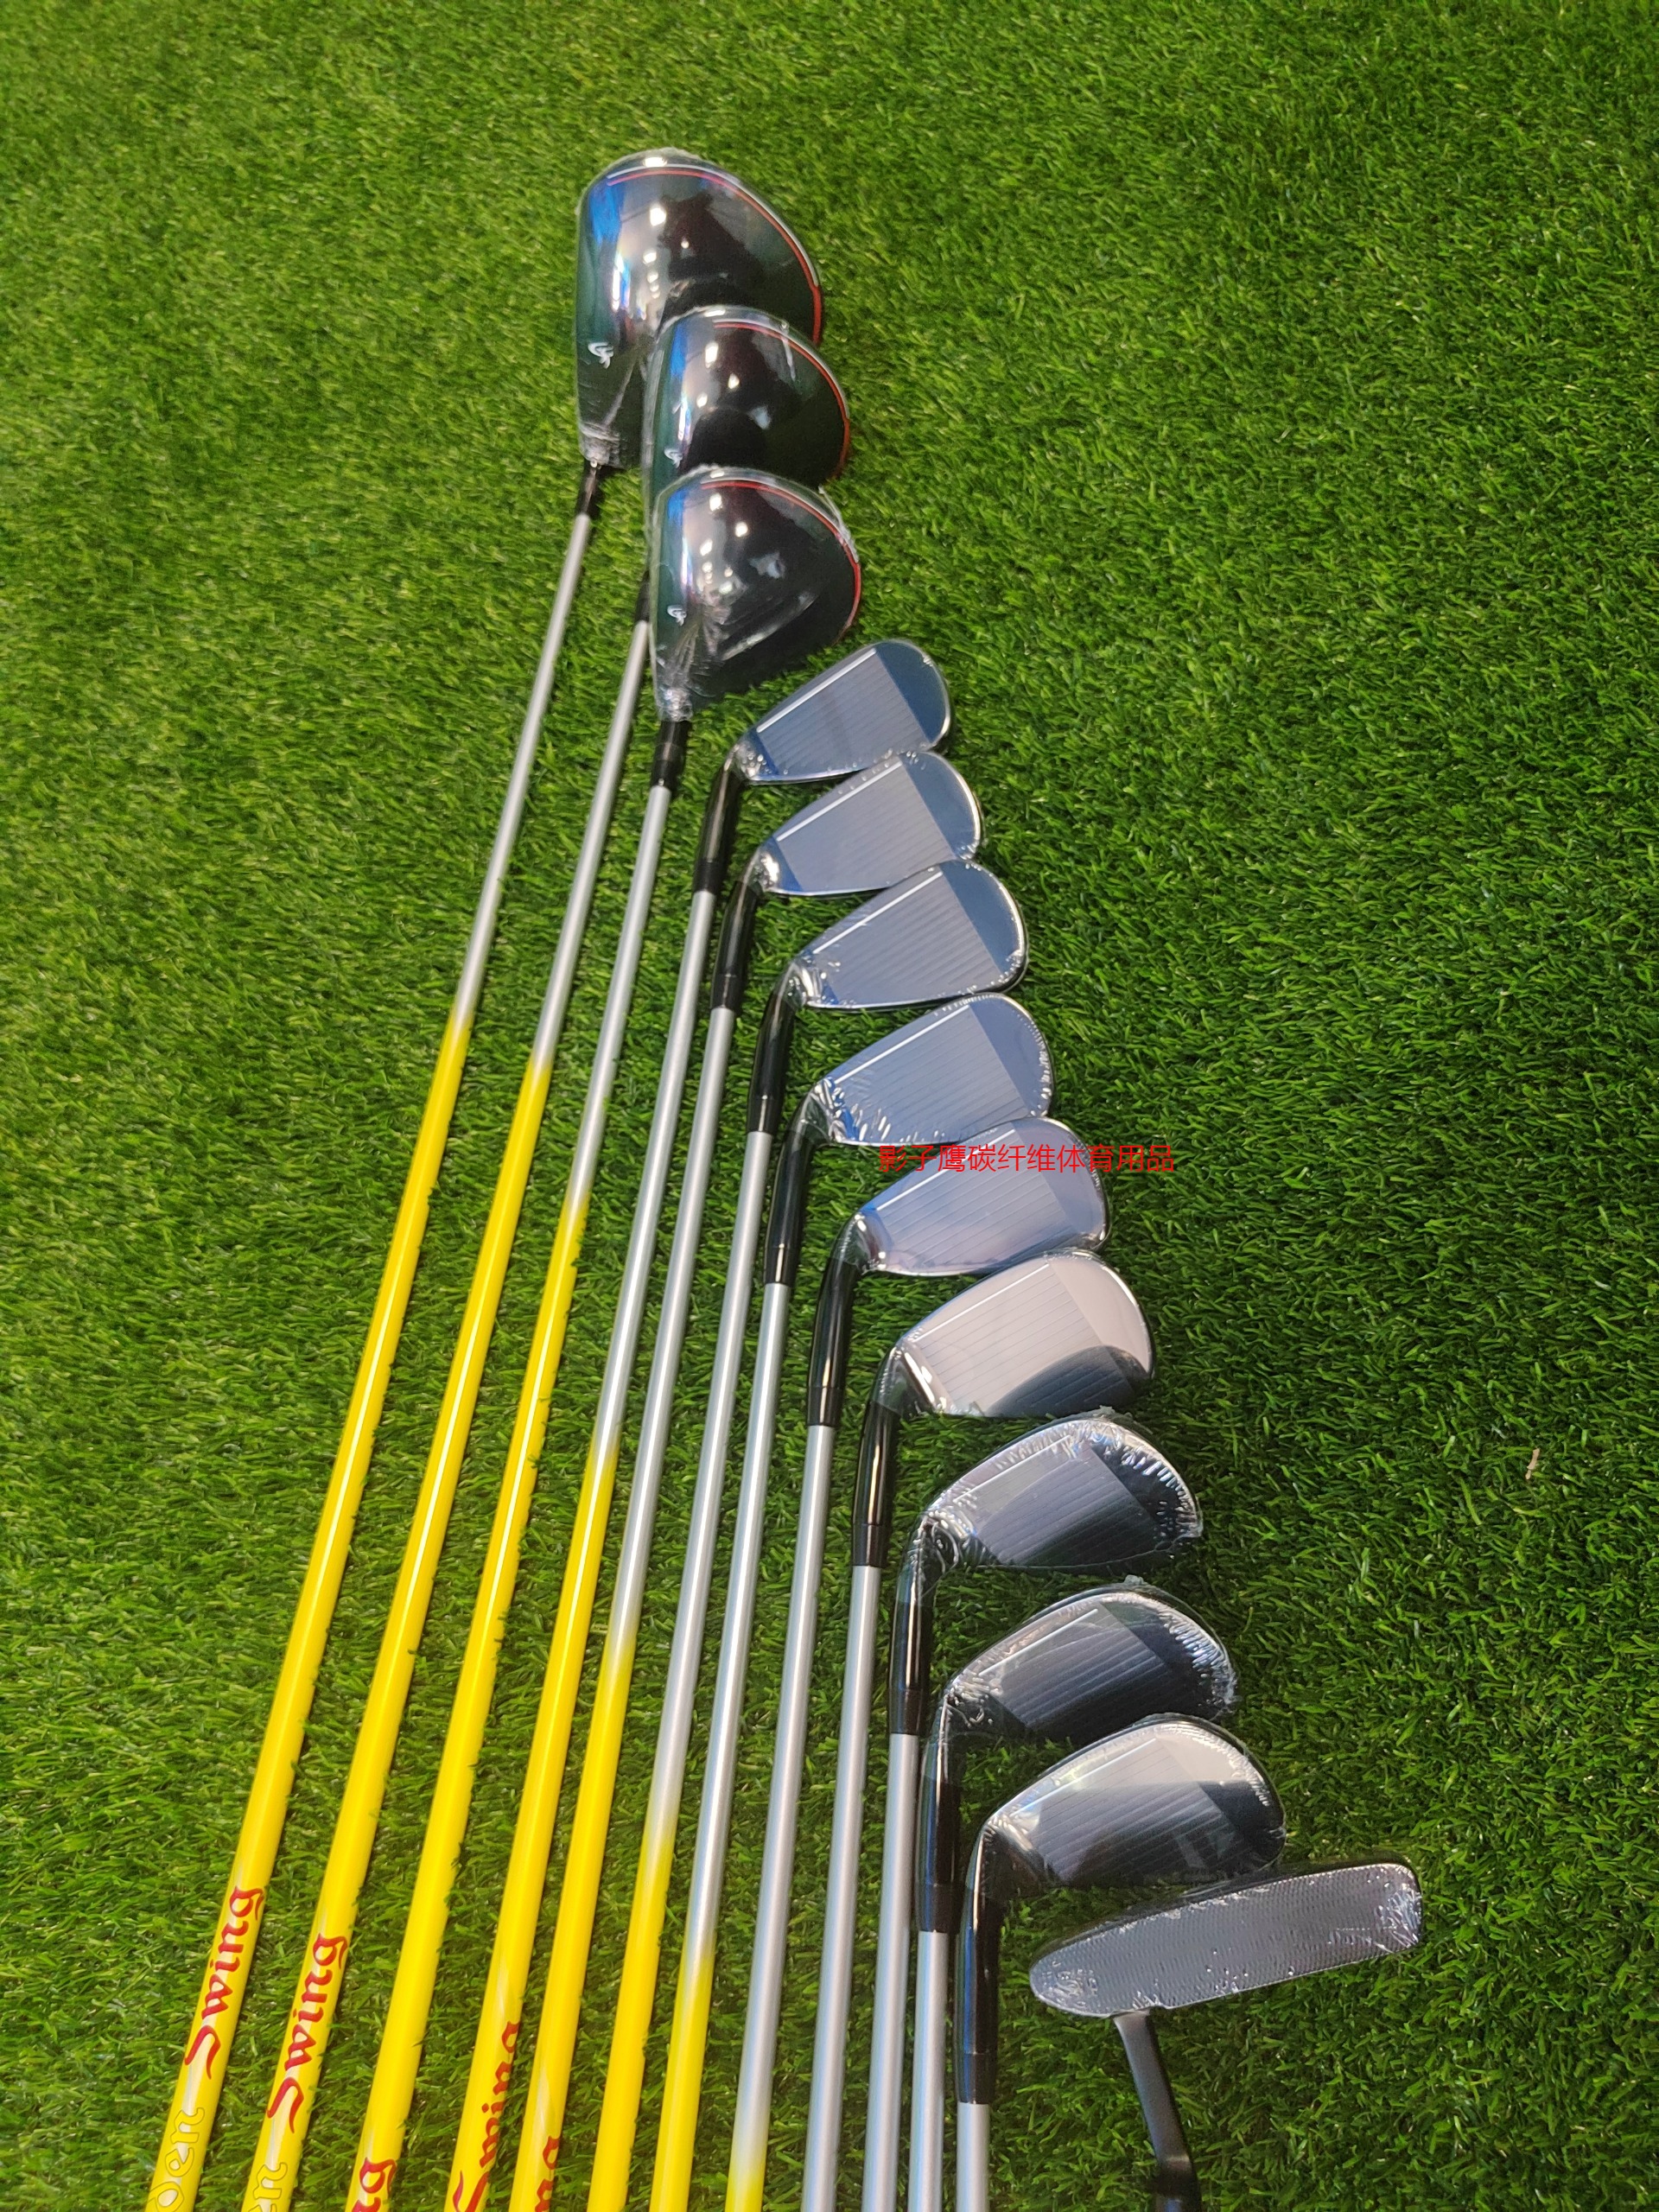 GoldenSwing男士套杆 高尔夫球杆 中国制造 品质工艺 男士 碳纤维 R硬度 3木9铁1推（赠球包推杆套）